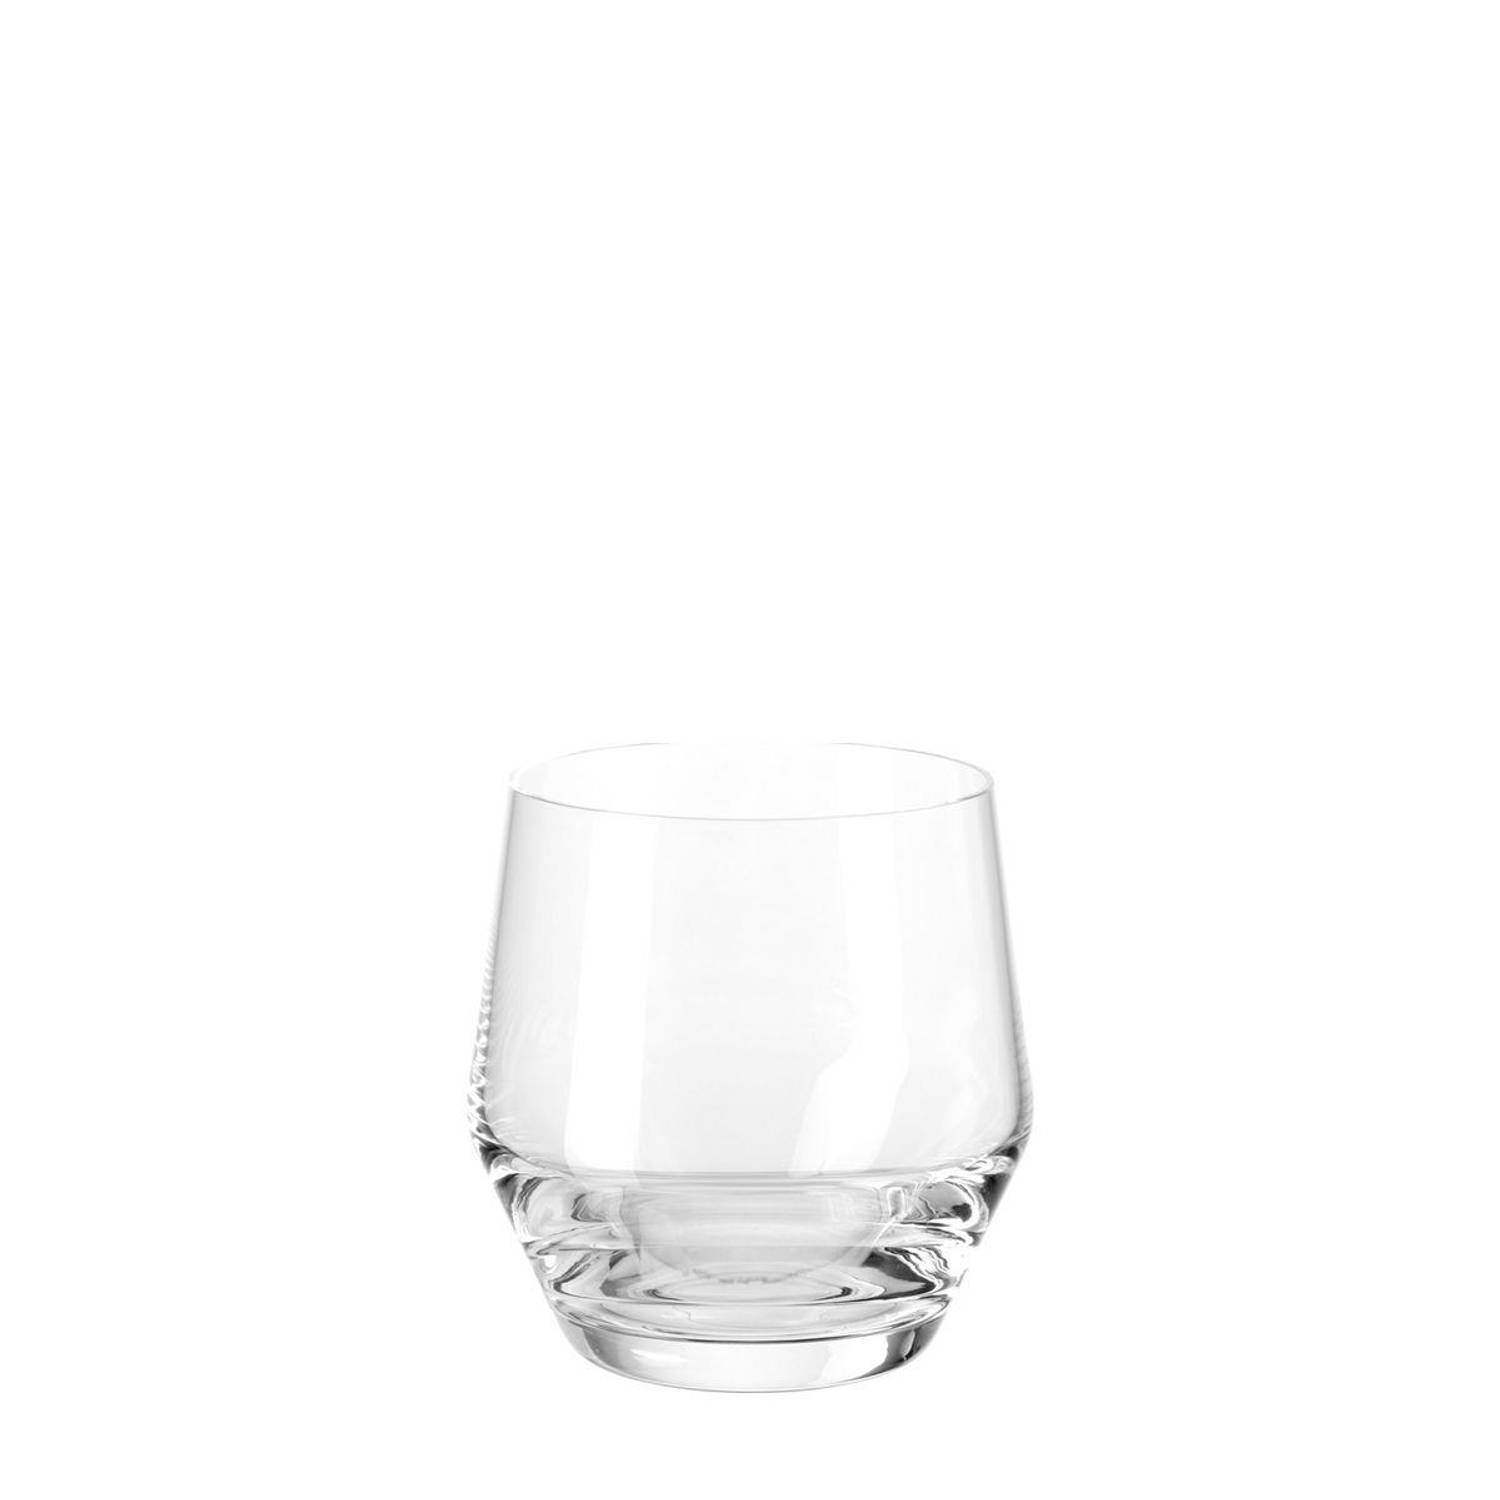 Leonardo Puccini drinkglas 310 ml - 6 stuks